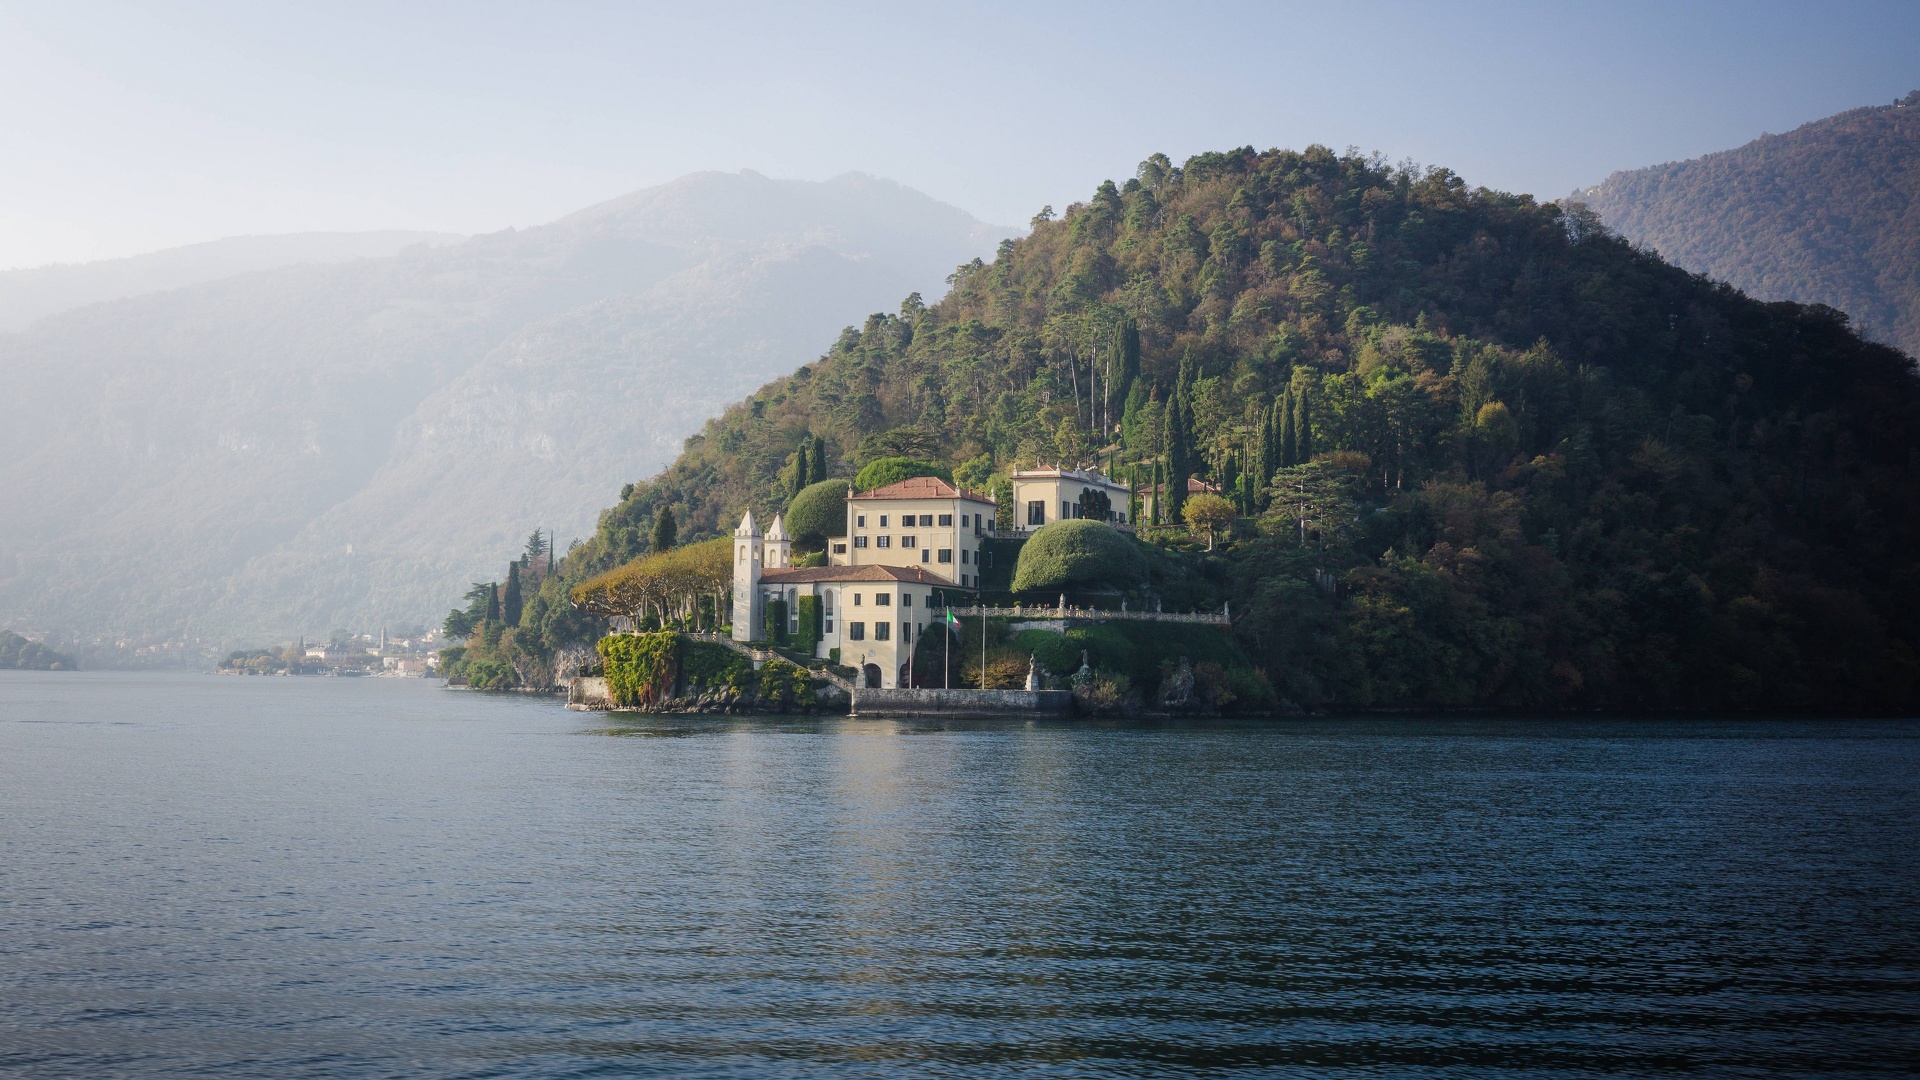 Villa au bord du Lac - Lac de Come - Italie.jpg